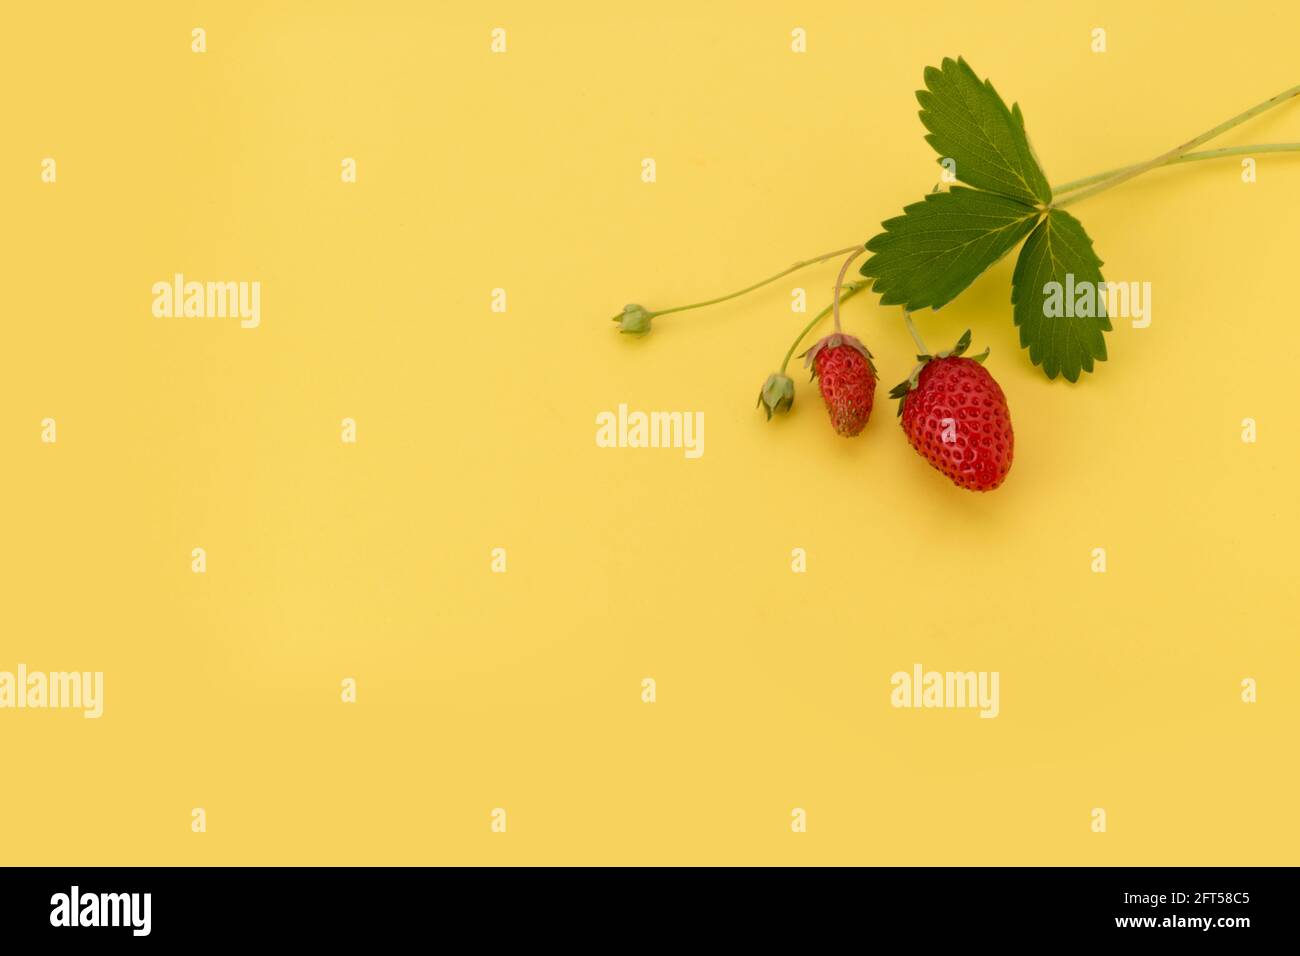 Fessée de fraise sauvage avec des feuilles isolées sur fond jaune recommander pour carte, affiche, salutation, étiquette. Copier l'espace Banque D'Images